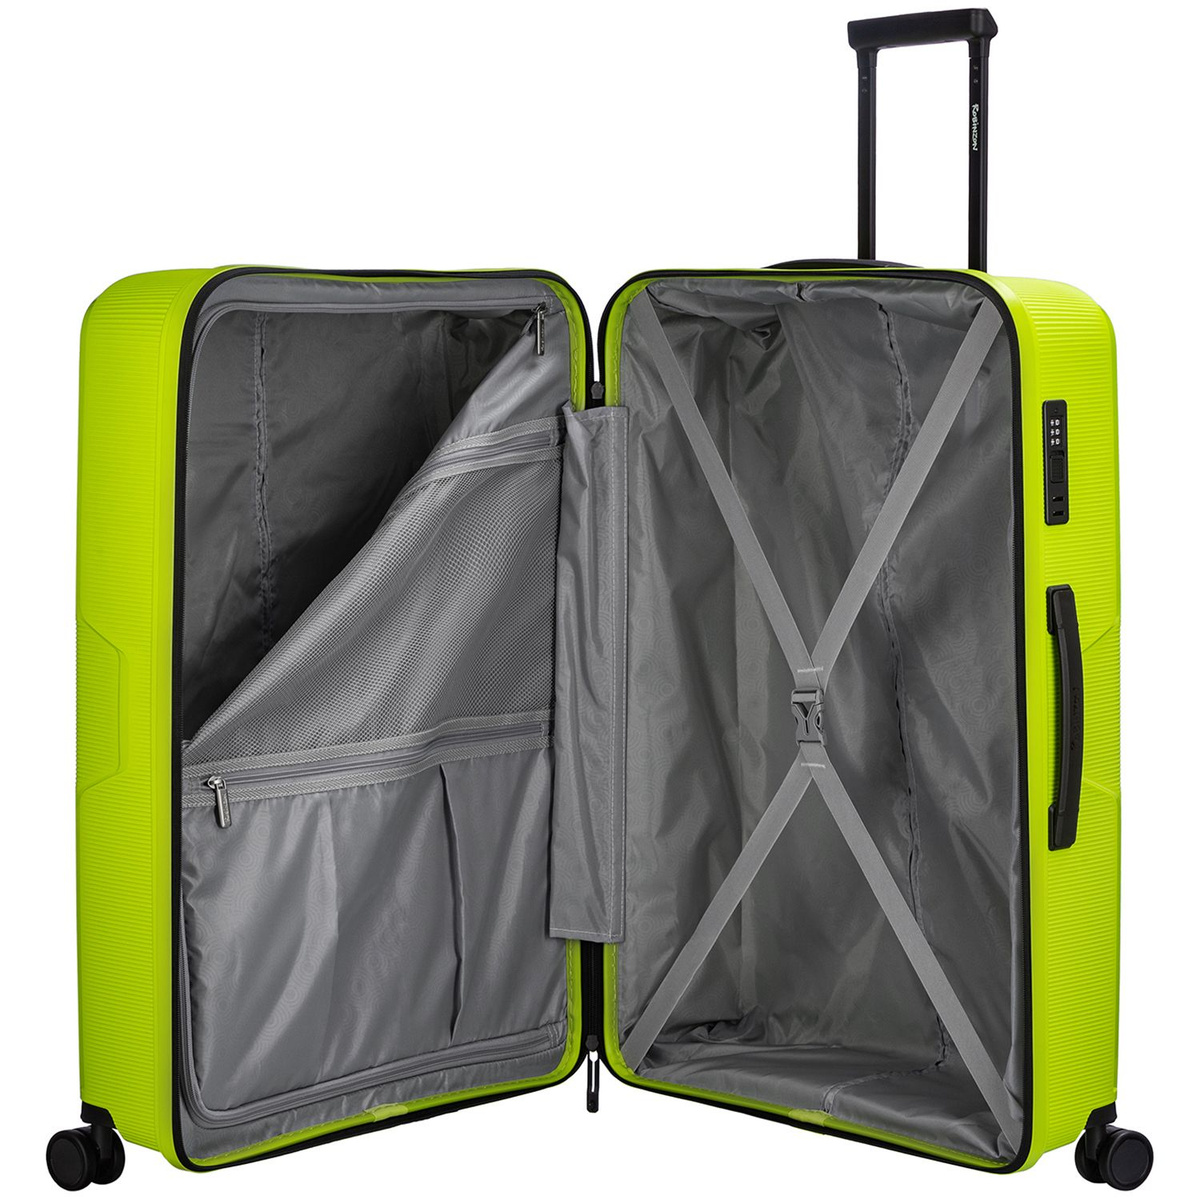 Внутри чемодана разделитель на молнии, в котором два дополнительных кармана и просторное отделение с багажными ремнями для ещё более удобной организации.